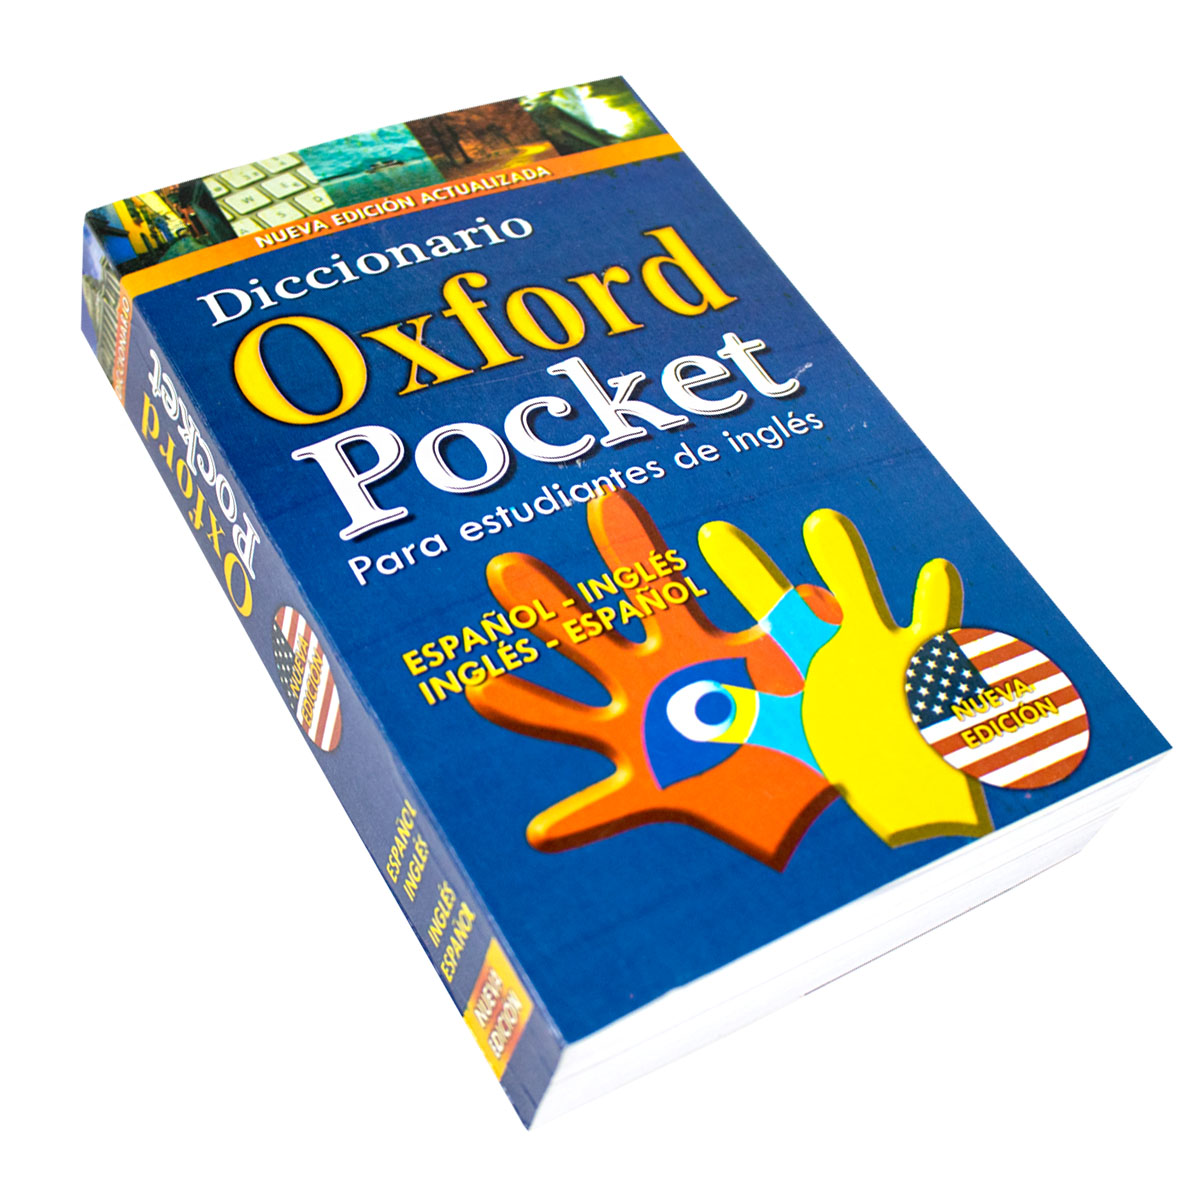 Diccionario Oxford Pocket español - ingles